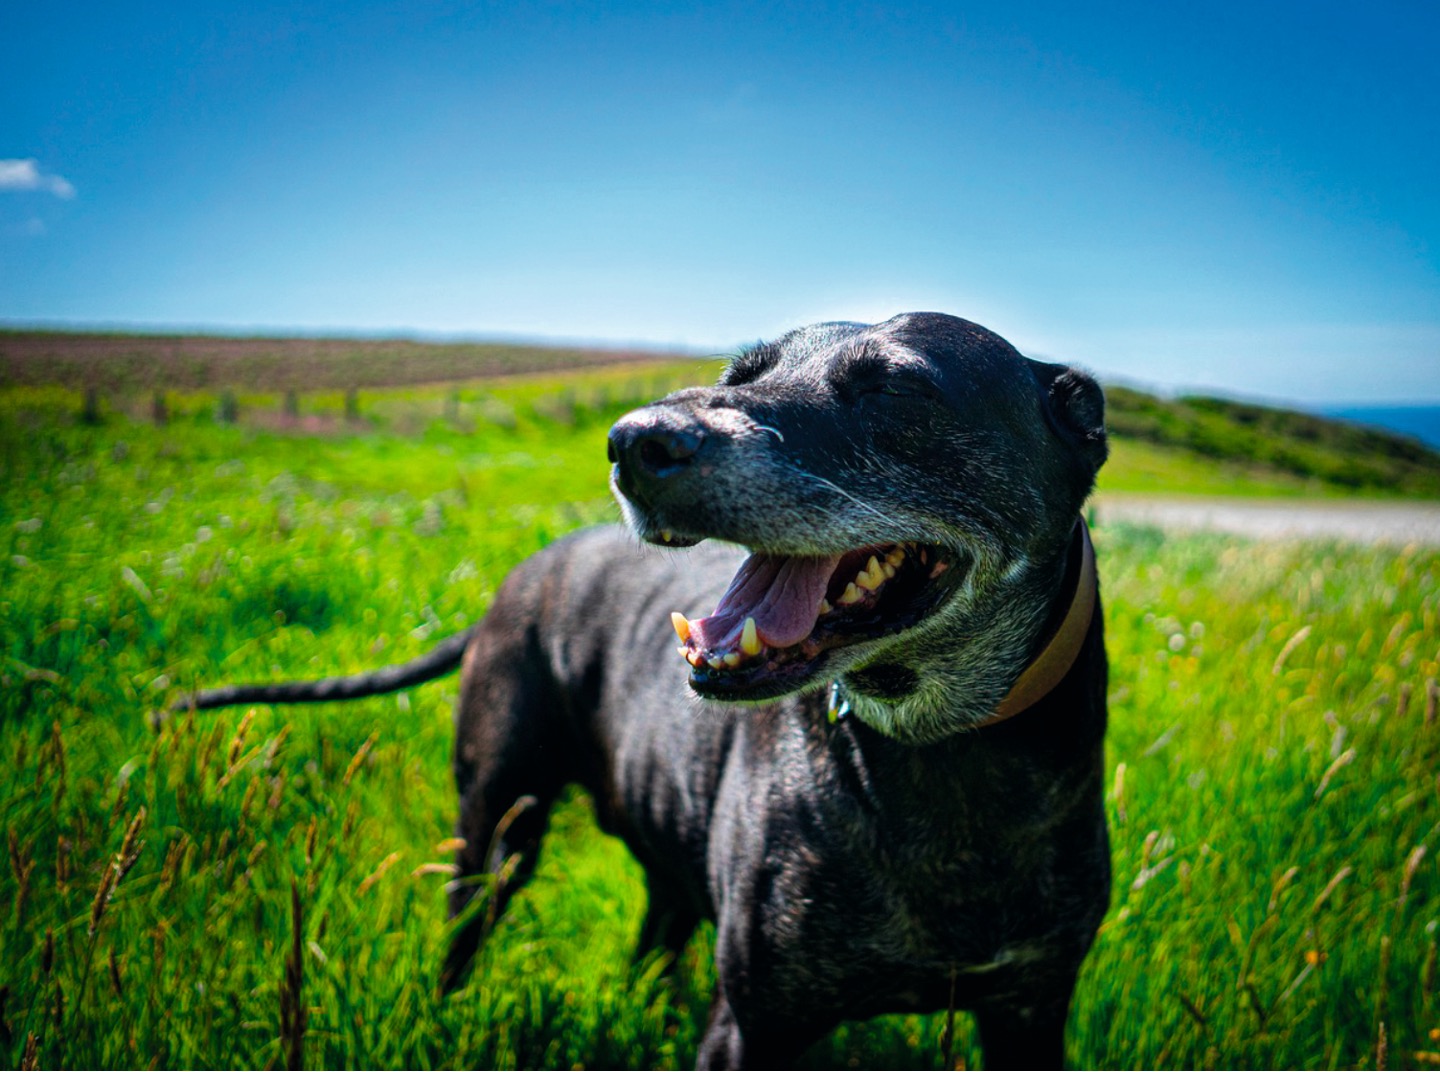 A black dog in a field